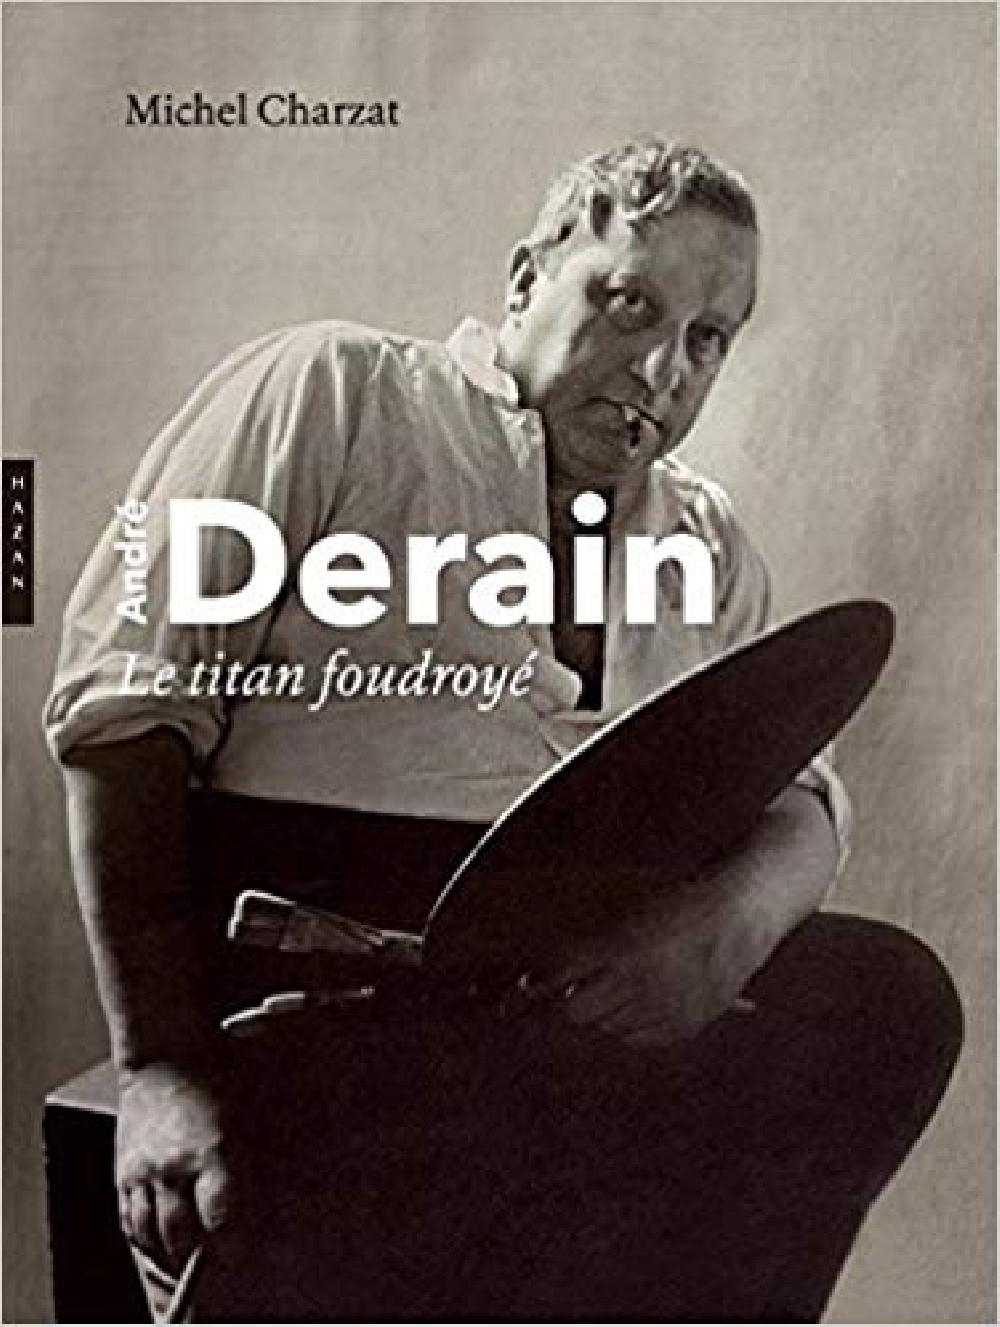 André Derain, le titan foudroyé